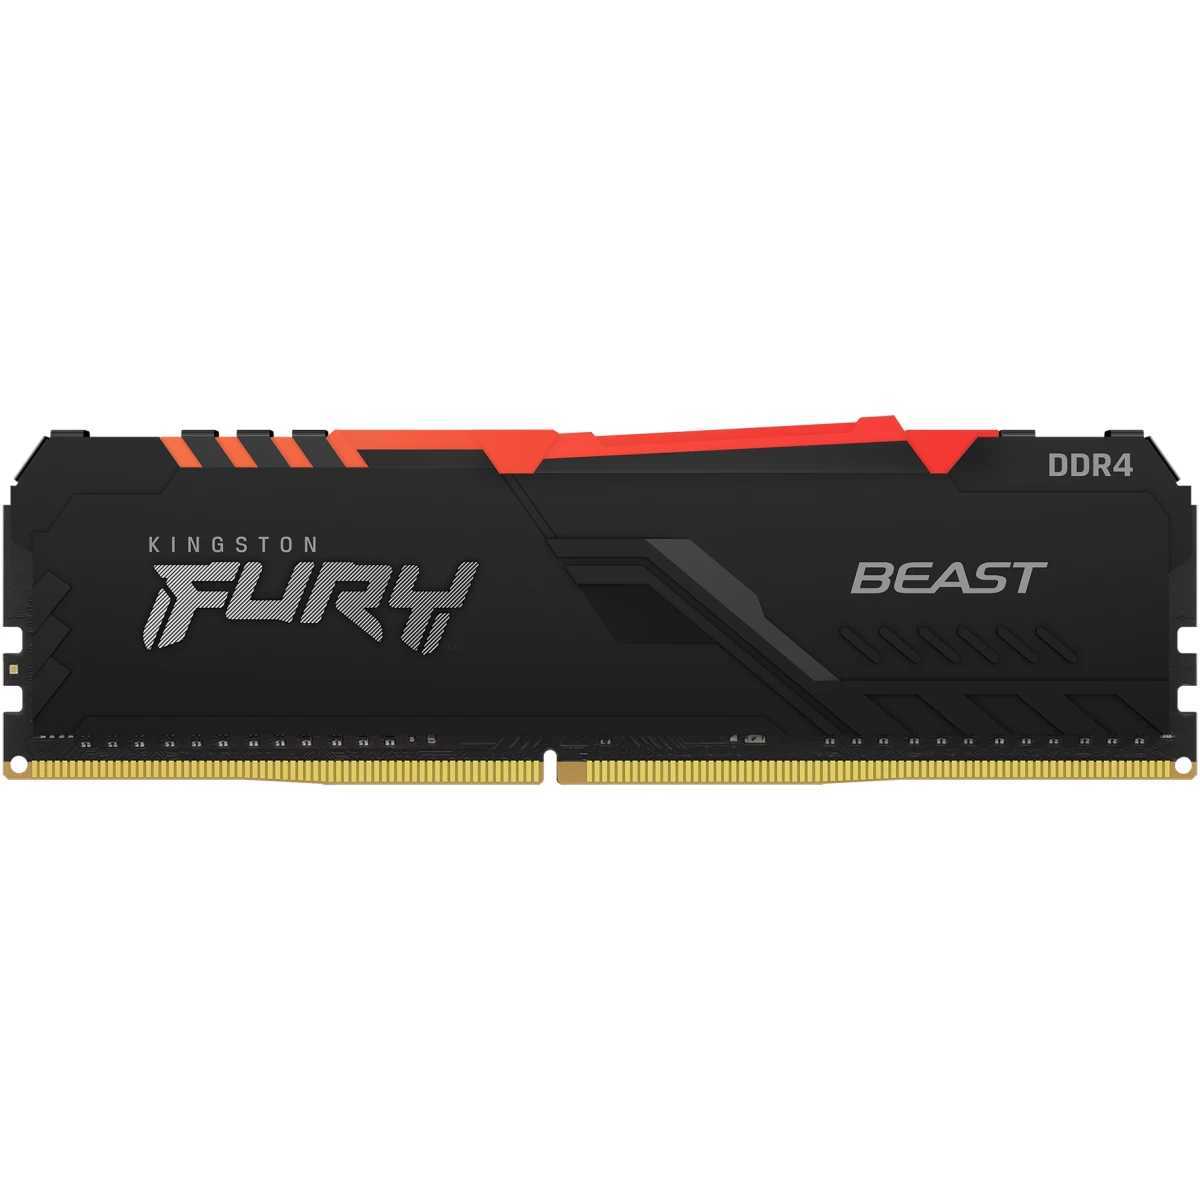 Fury 16GB RGB 3200 MHz DDR4 Memory photo 